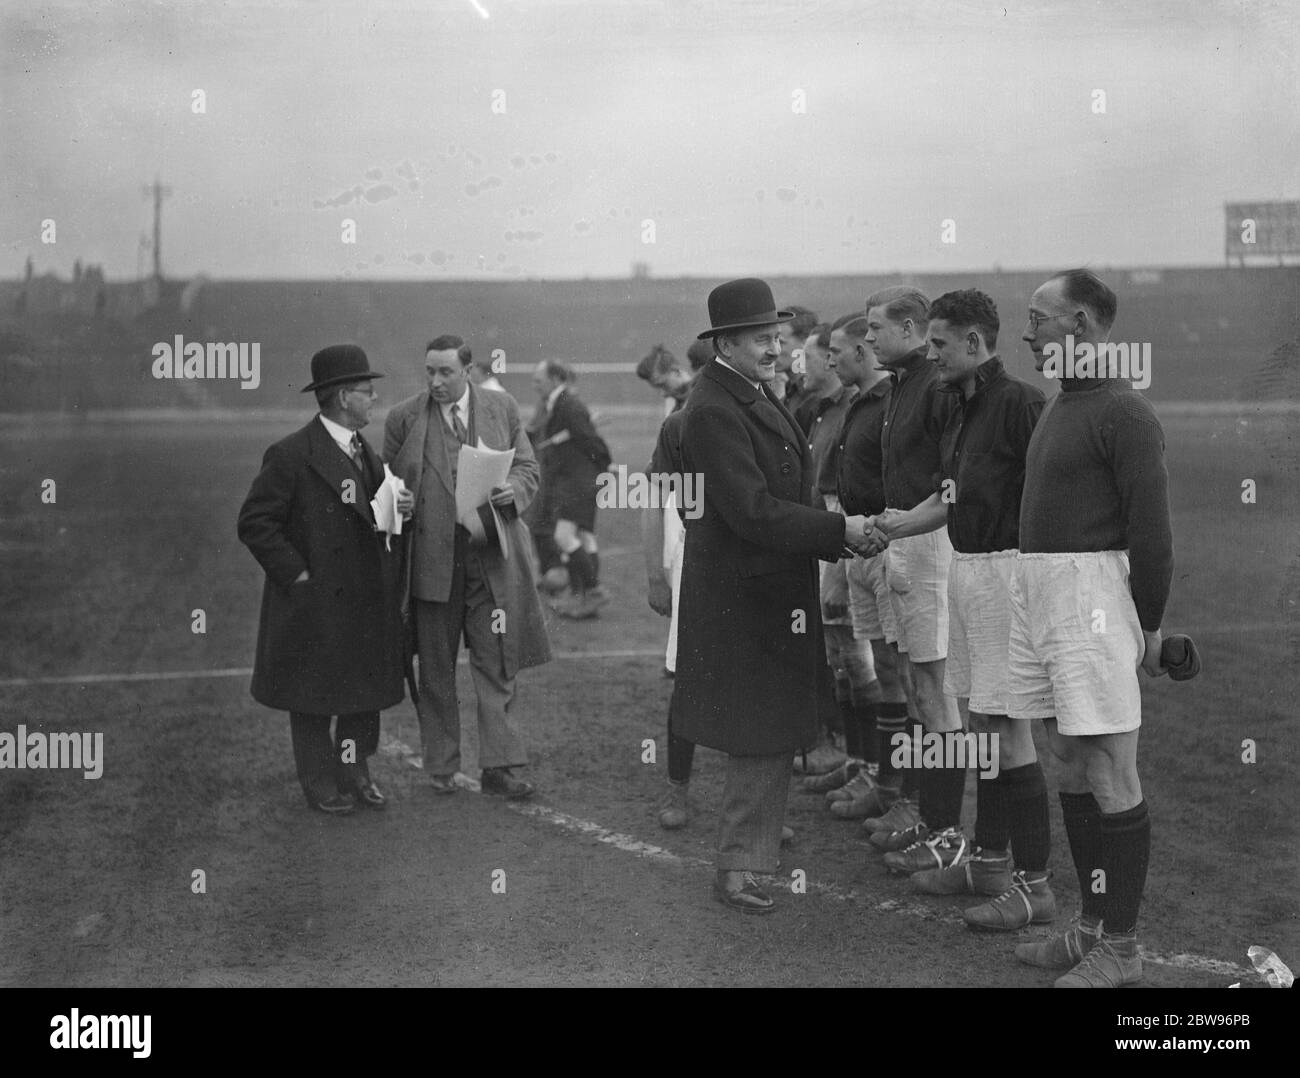 Prinz Arthur von Connaught inspiziert Feuerwehrleute bei Benefizfußballspiel an Stamford Bridge . Prinz Arthur von Connaught startete bei einem Charity Football Spiel zwischen Feuerwehrleuten in Stamford Bridge, London. Prinz Arthur von Connaught Inspektion eines der Teams. April 1932 Stockfoto